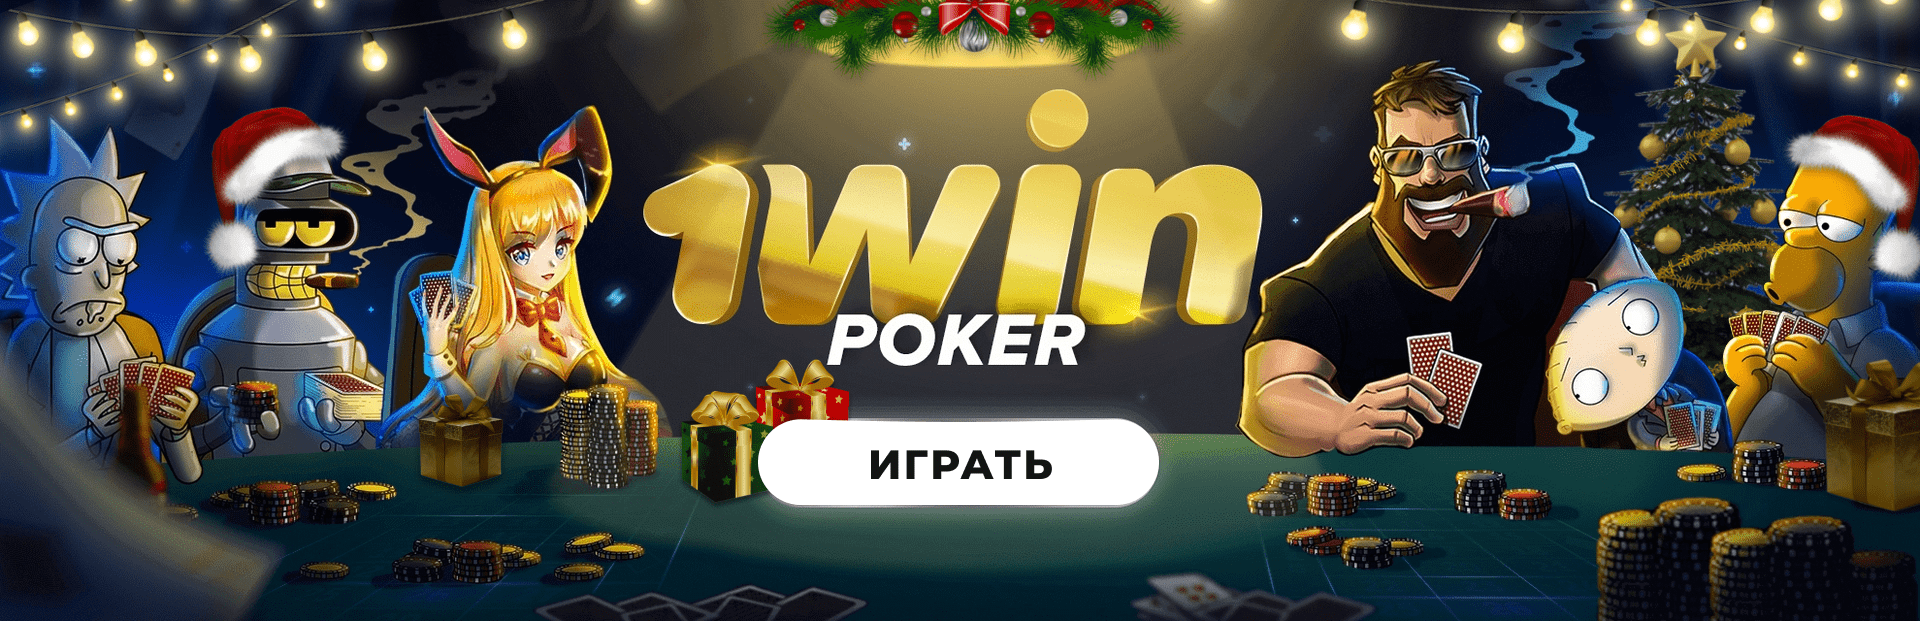 покер 1win играть на реальные деньги - 1win онлайн казино Украина